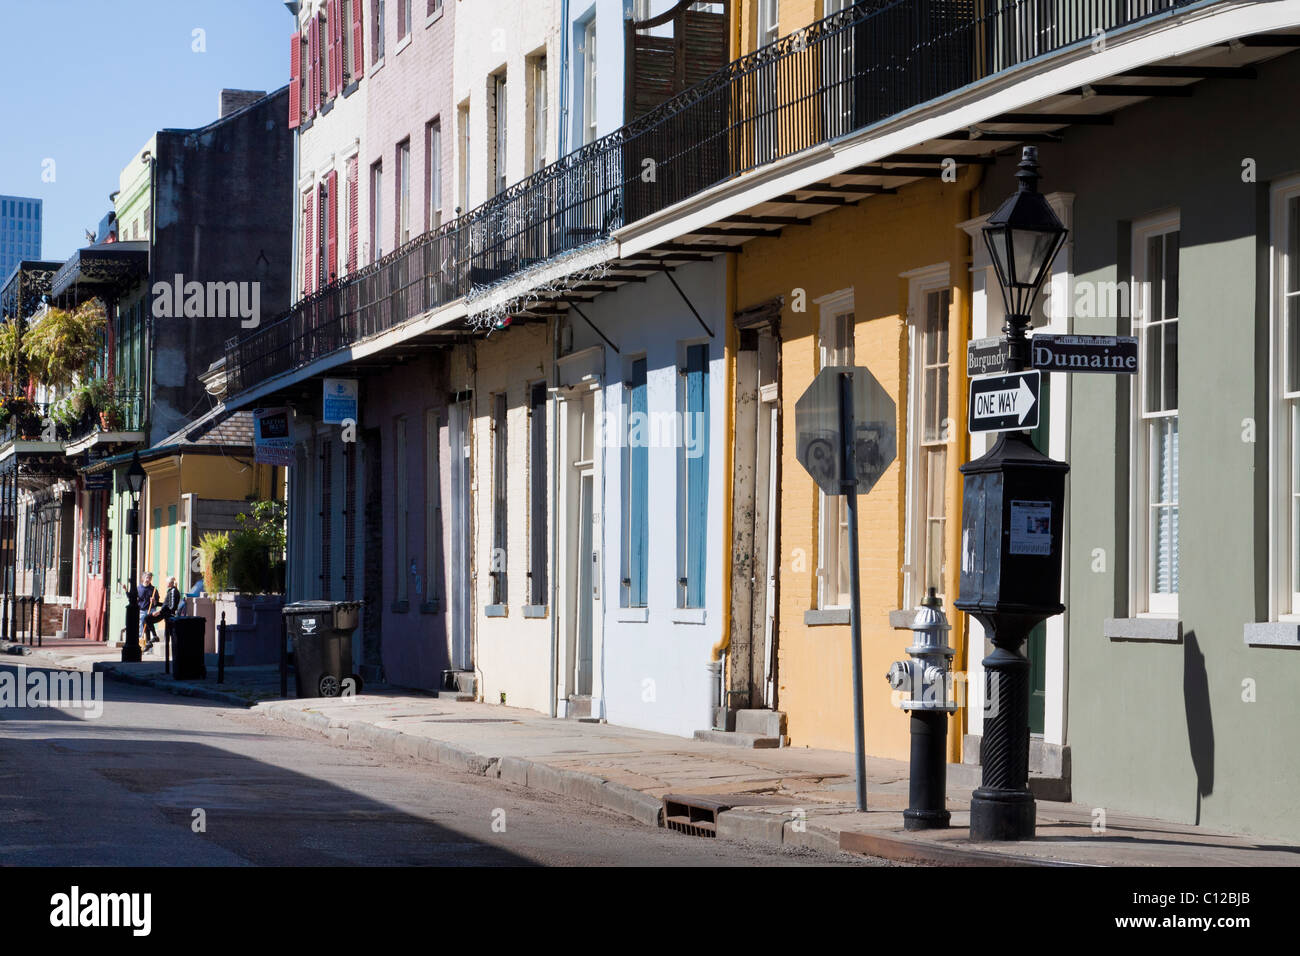 Rangée de maisons créoles colorées en Bourgogne et Dumaine Street dans le quartier français de La Nouvelle-Orléans, Louisiane Banque D'Images